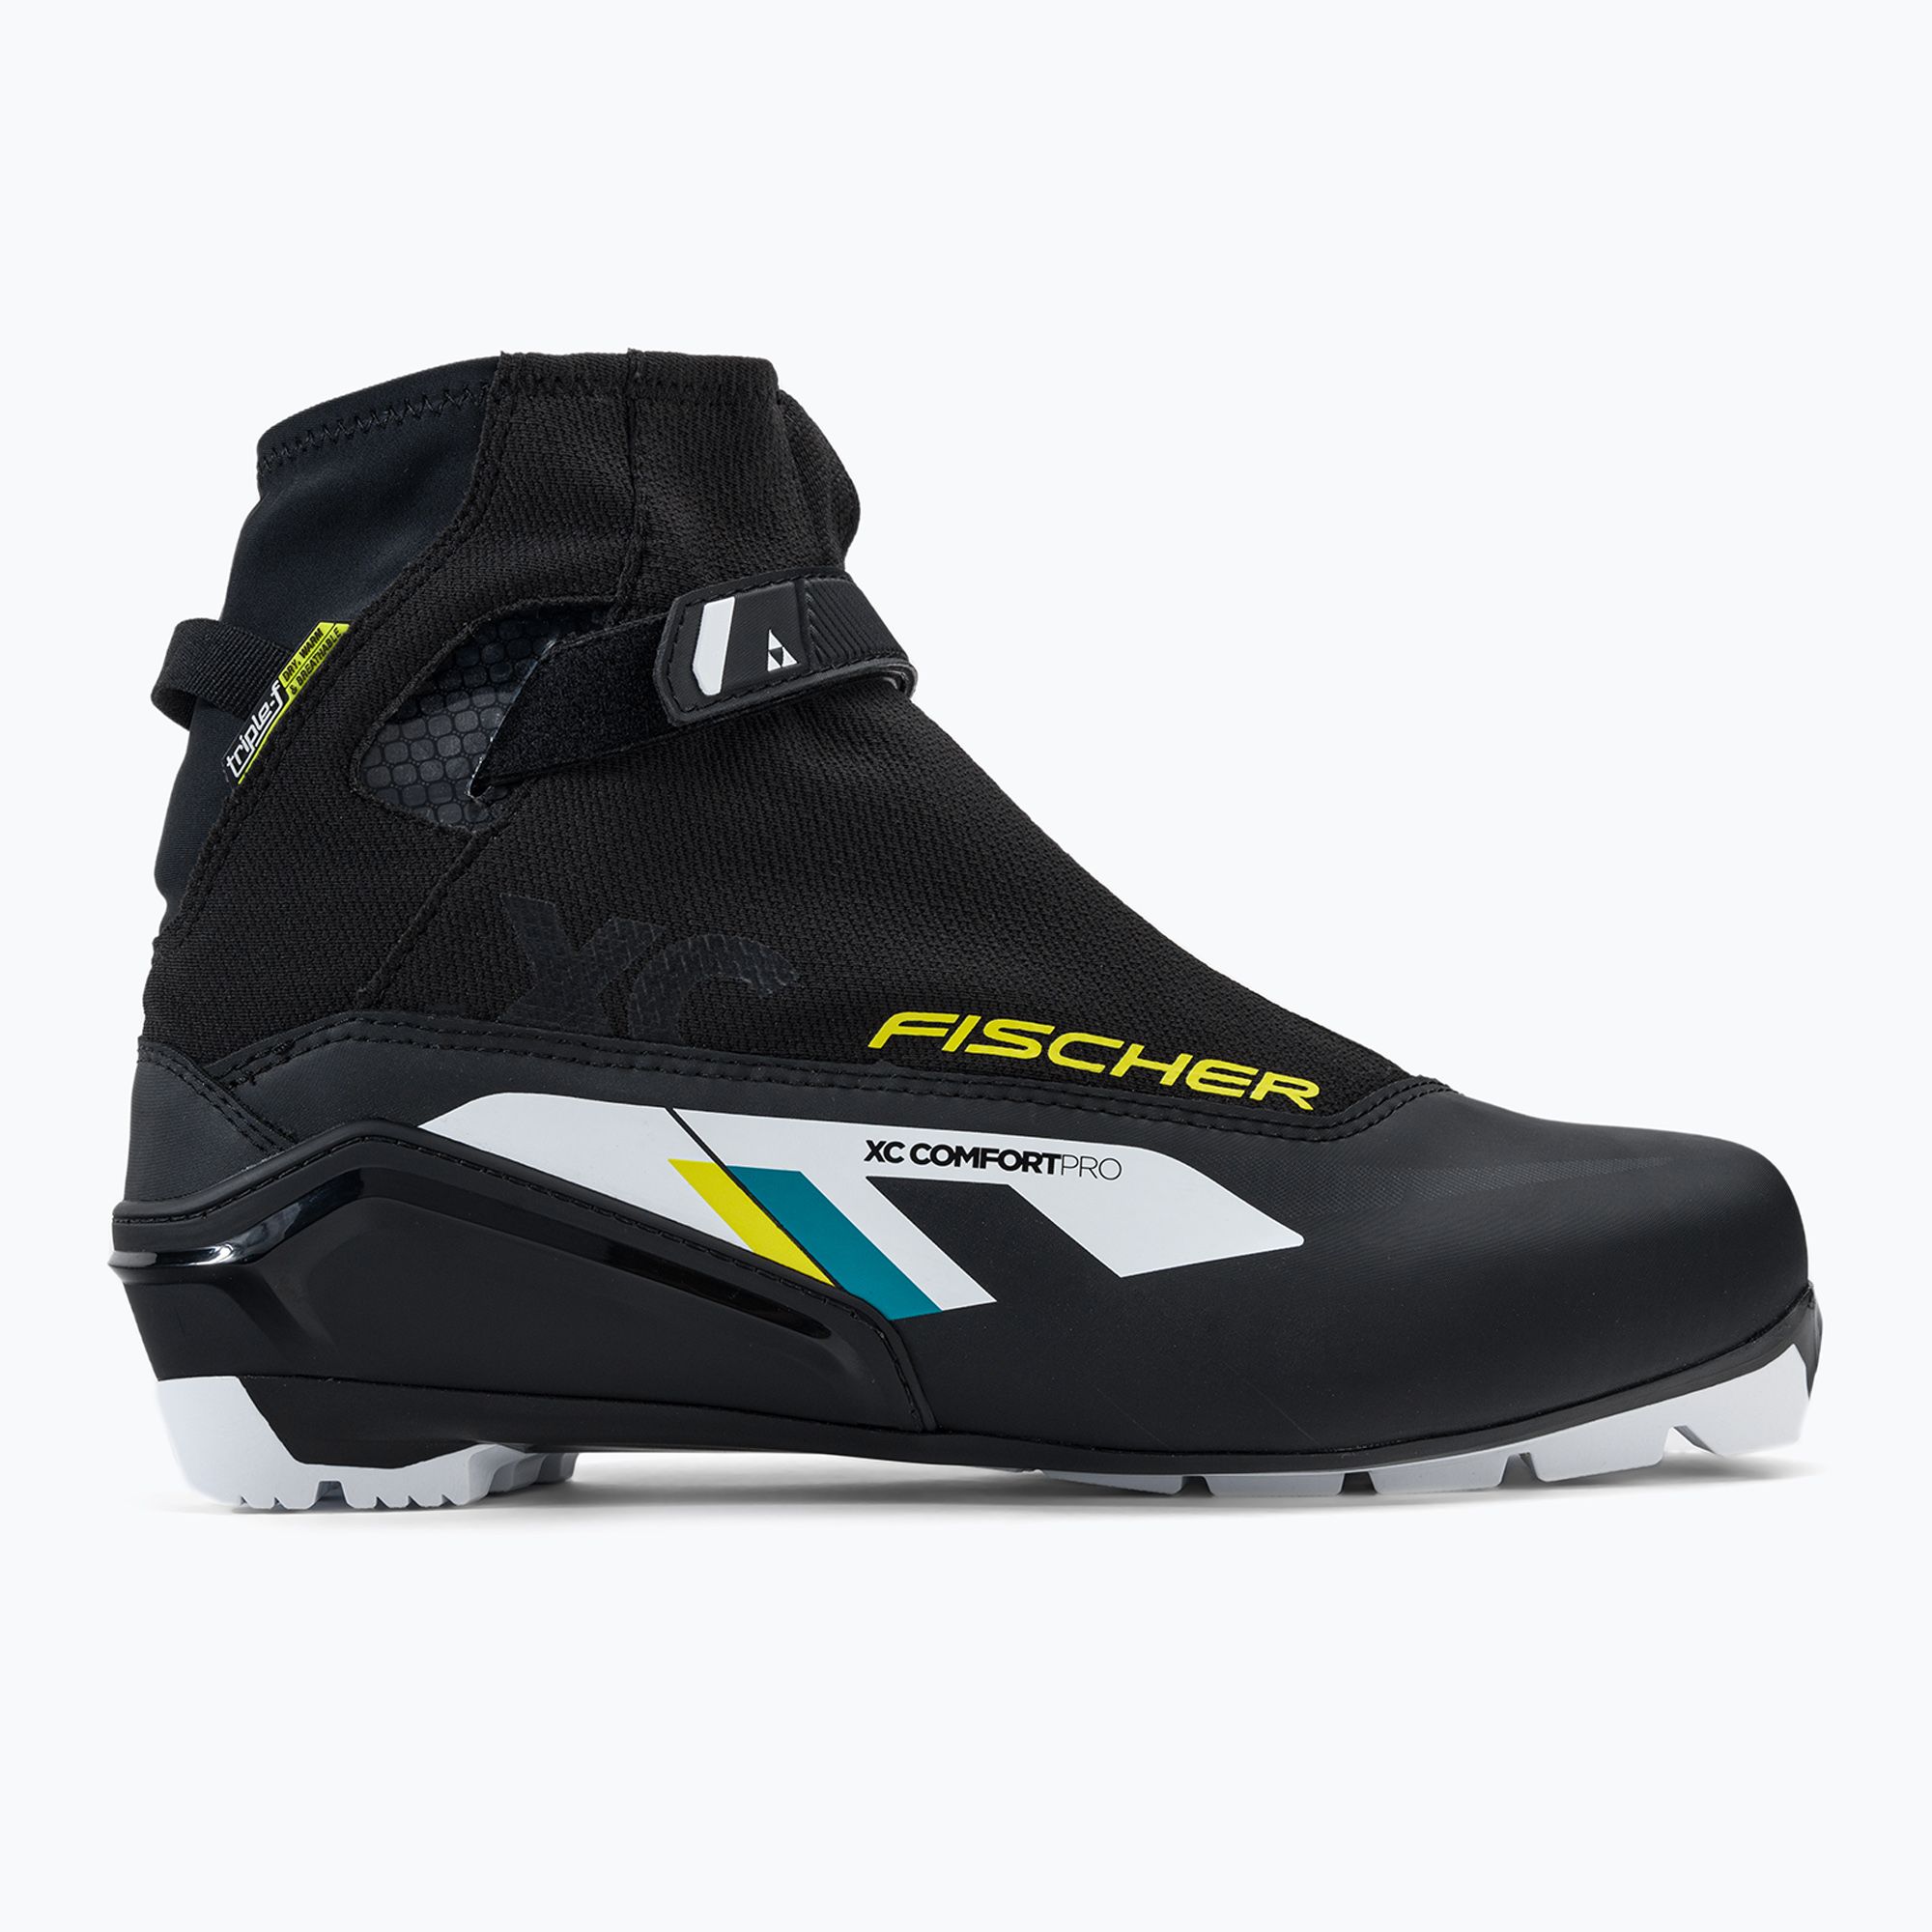 Buty do nart biegowych Fischer XC Comfort Pro black/yellow zdjęcie nr 2